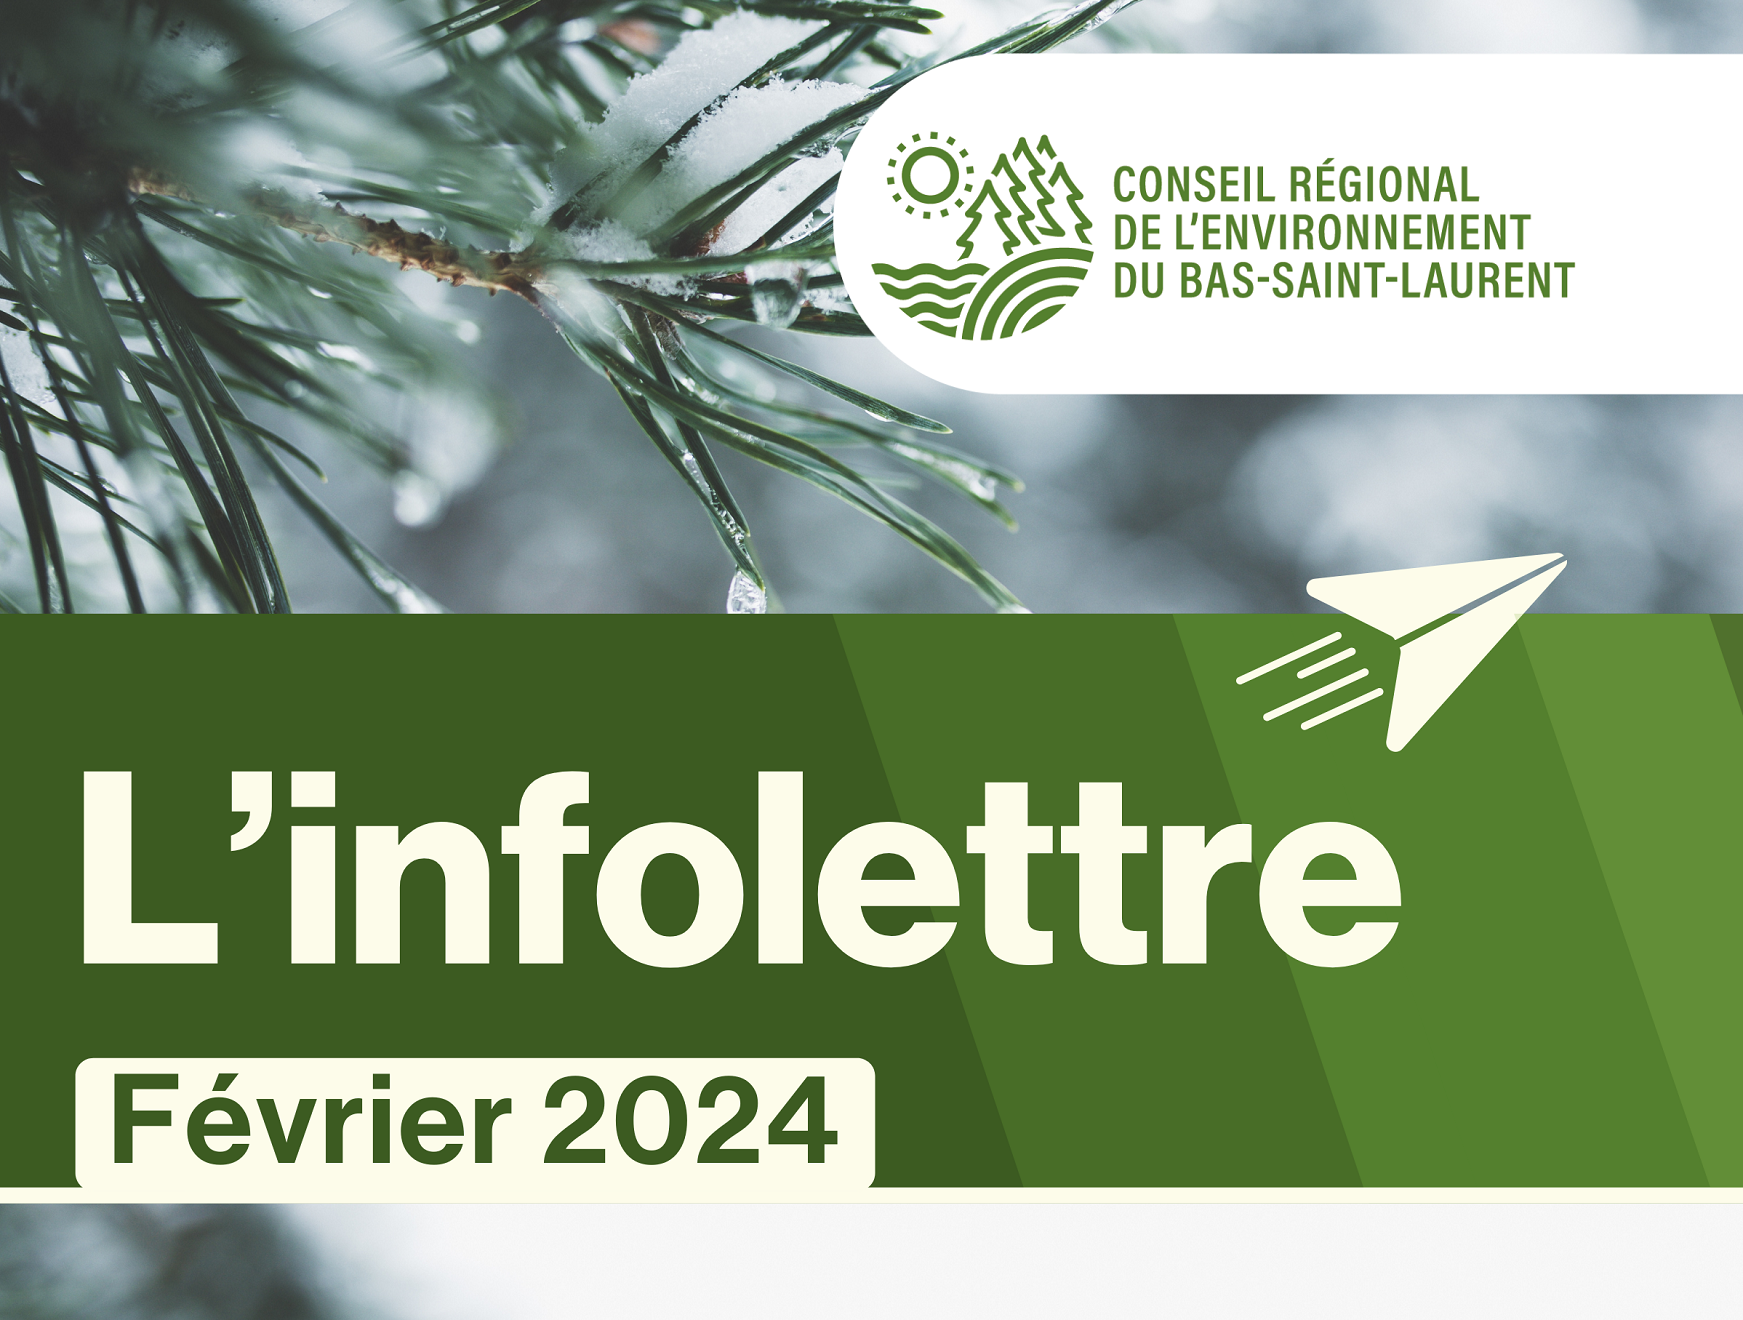 Infolettre de février du Conseil régional de l’environnement du Bas-Saint-Laurent